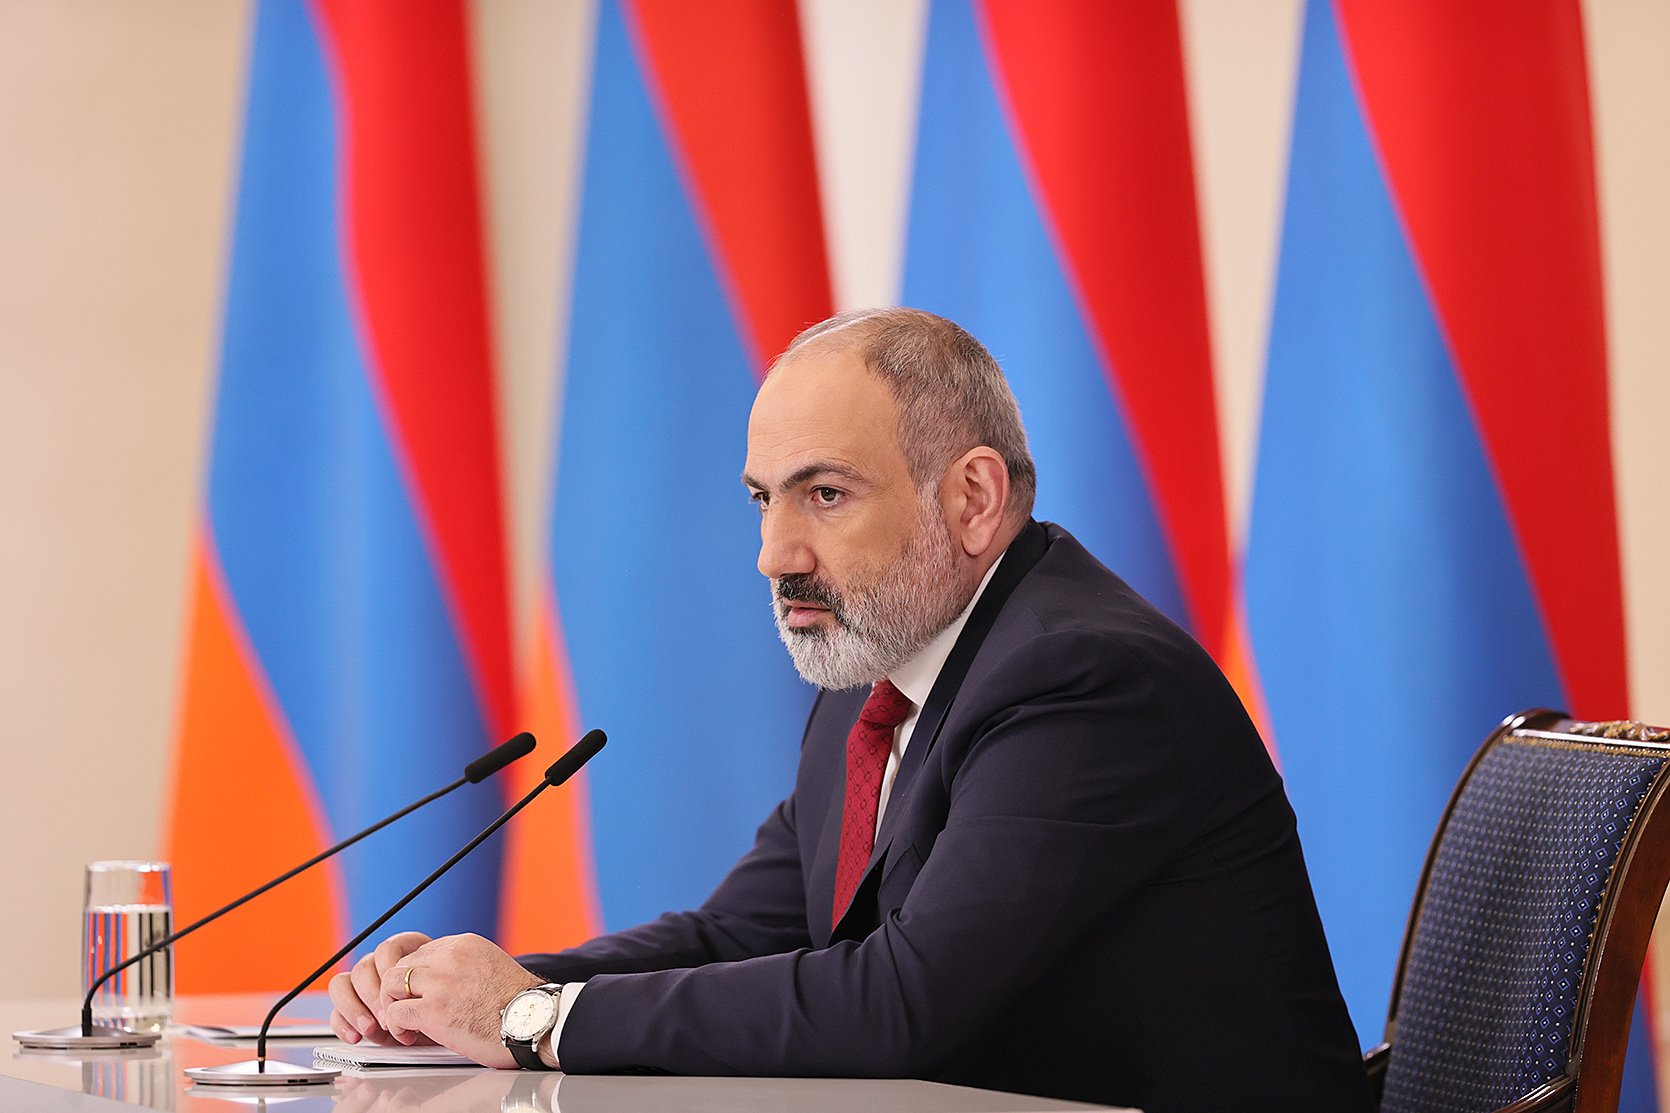 Ըստ Բաքվի՝ Երևանը դեմ է խաղաղության համաձայնագրում Ադրբեջանի նկատմամբ տարածքային հավակնությունները բացառող կետին